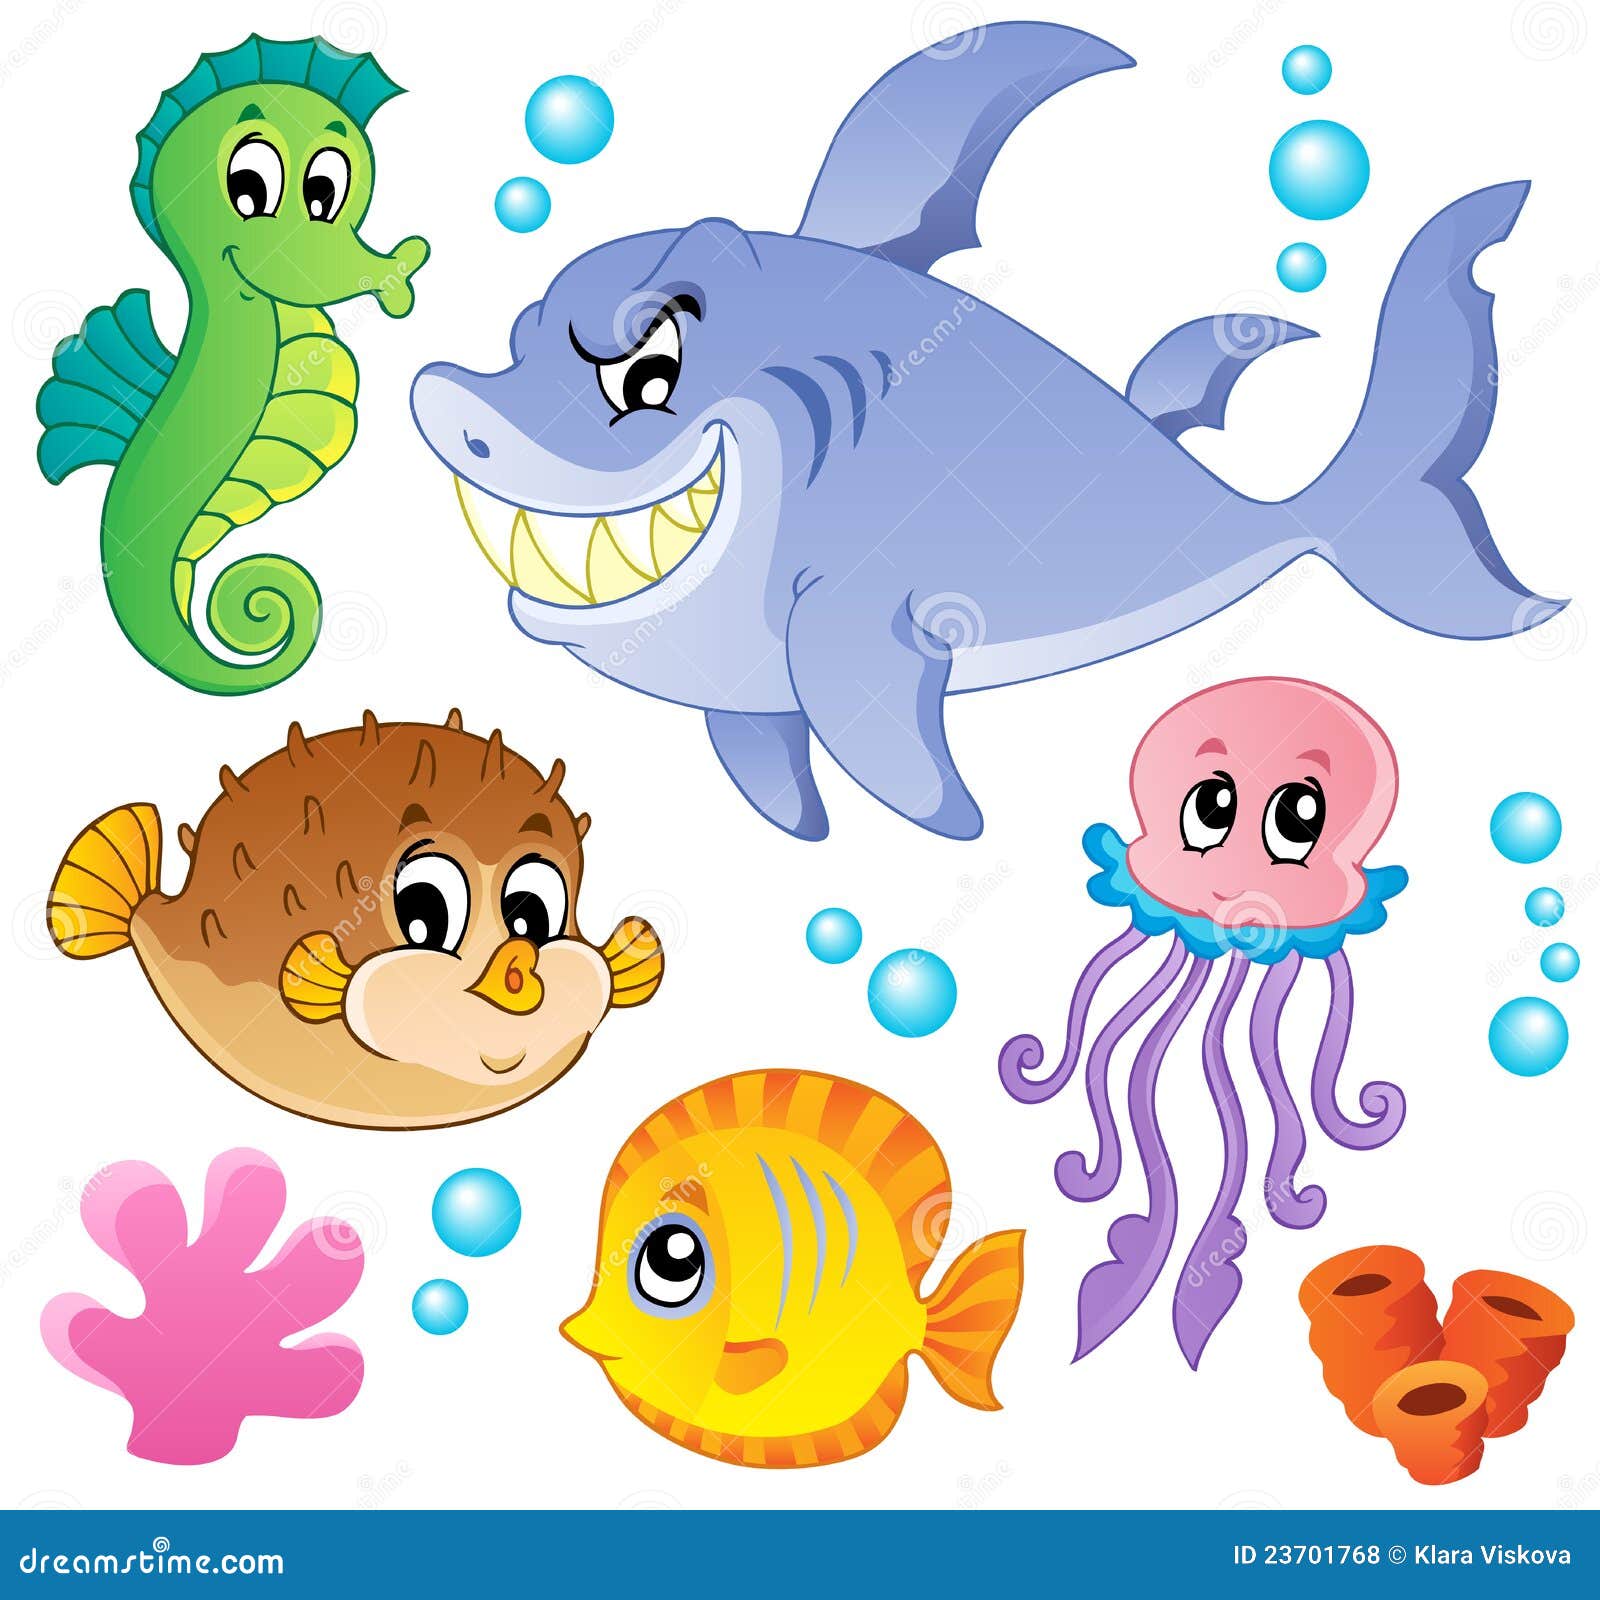 День водных животных в детском саду. Морские обитатели для детей. Морские жители для детей. Подводные обитатели для детей. Жители моря мультяшные.